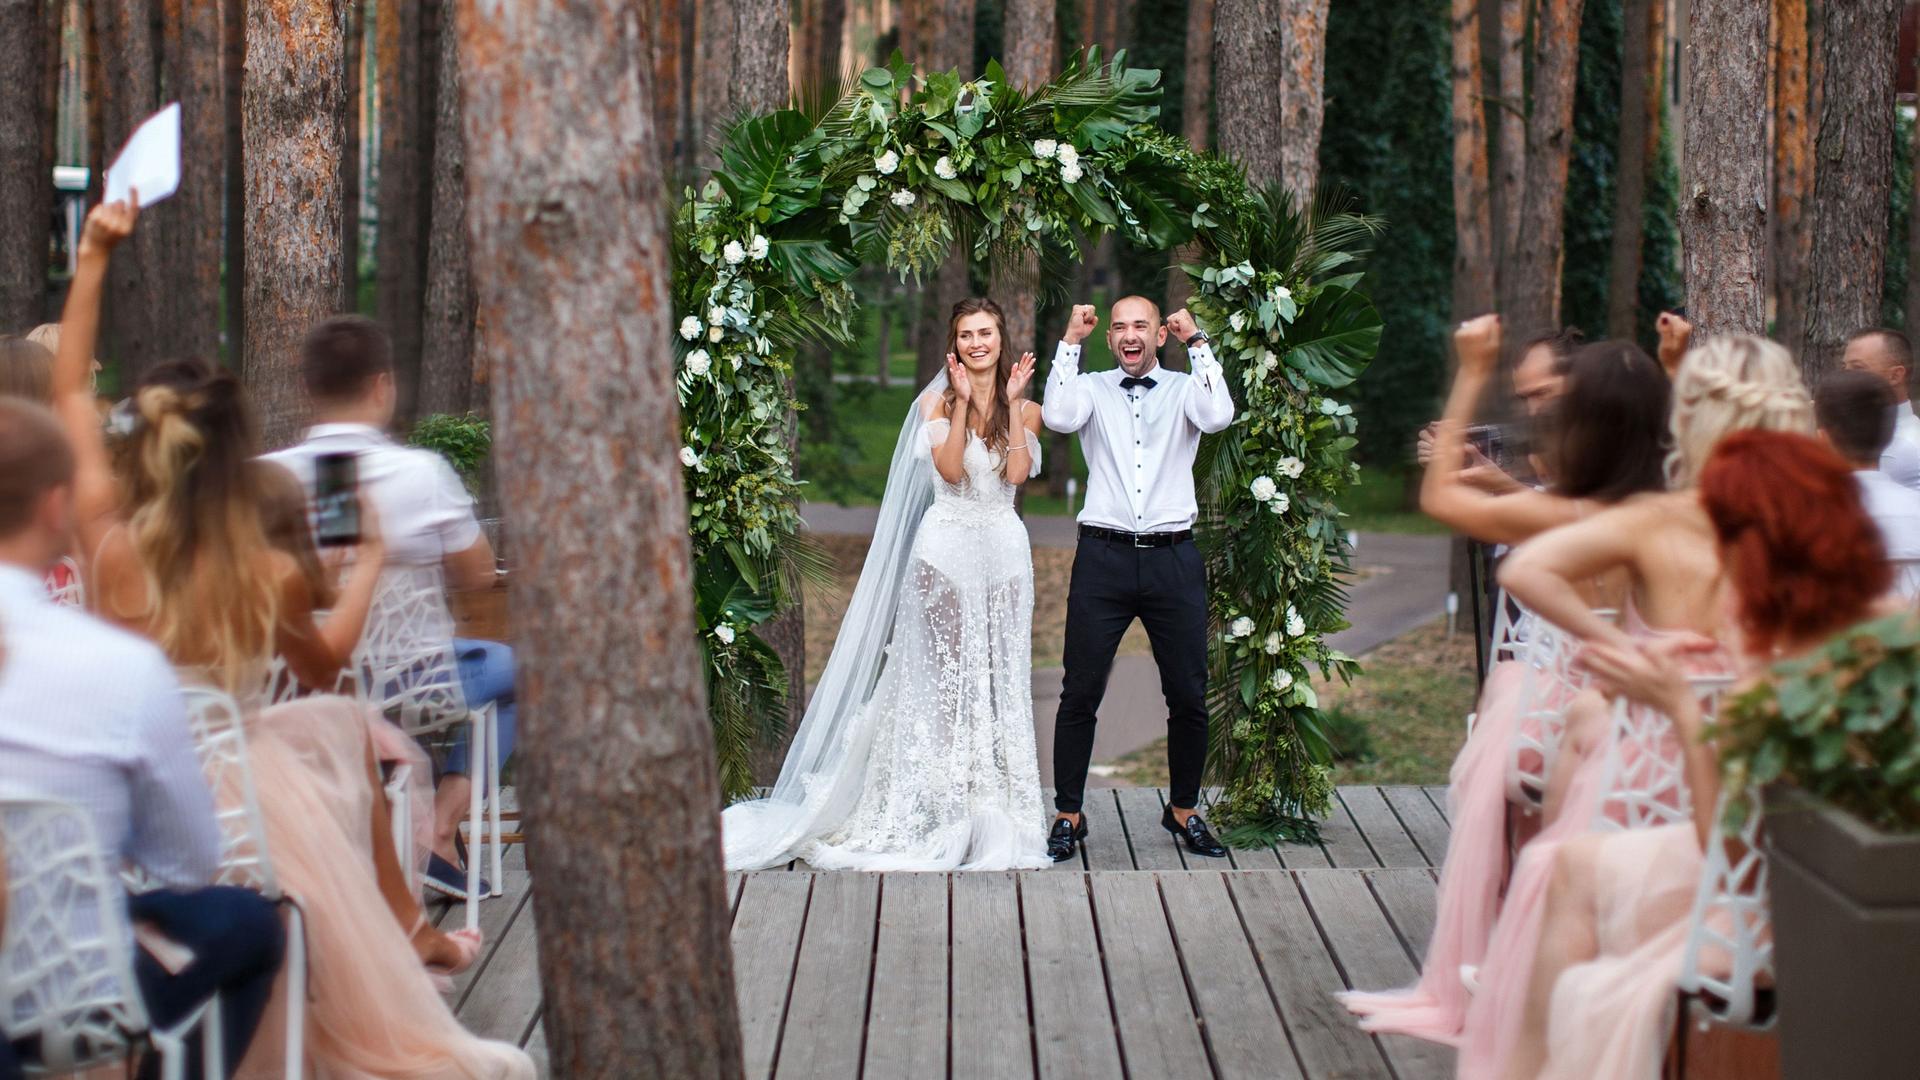 Brautpaar jubelt mit Hochzeitsgästen während ihrer Trauung im Wald